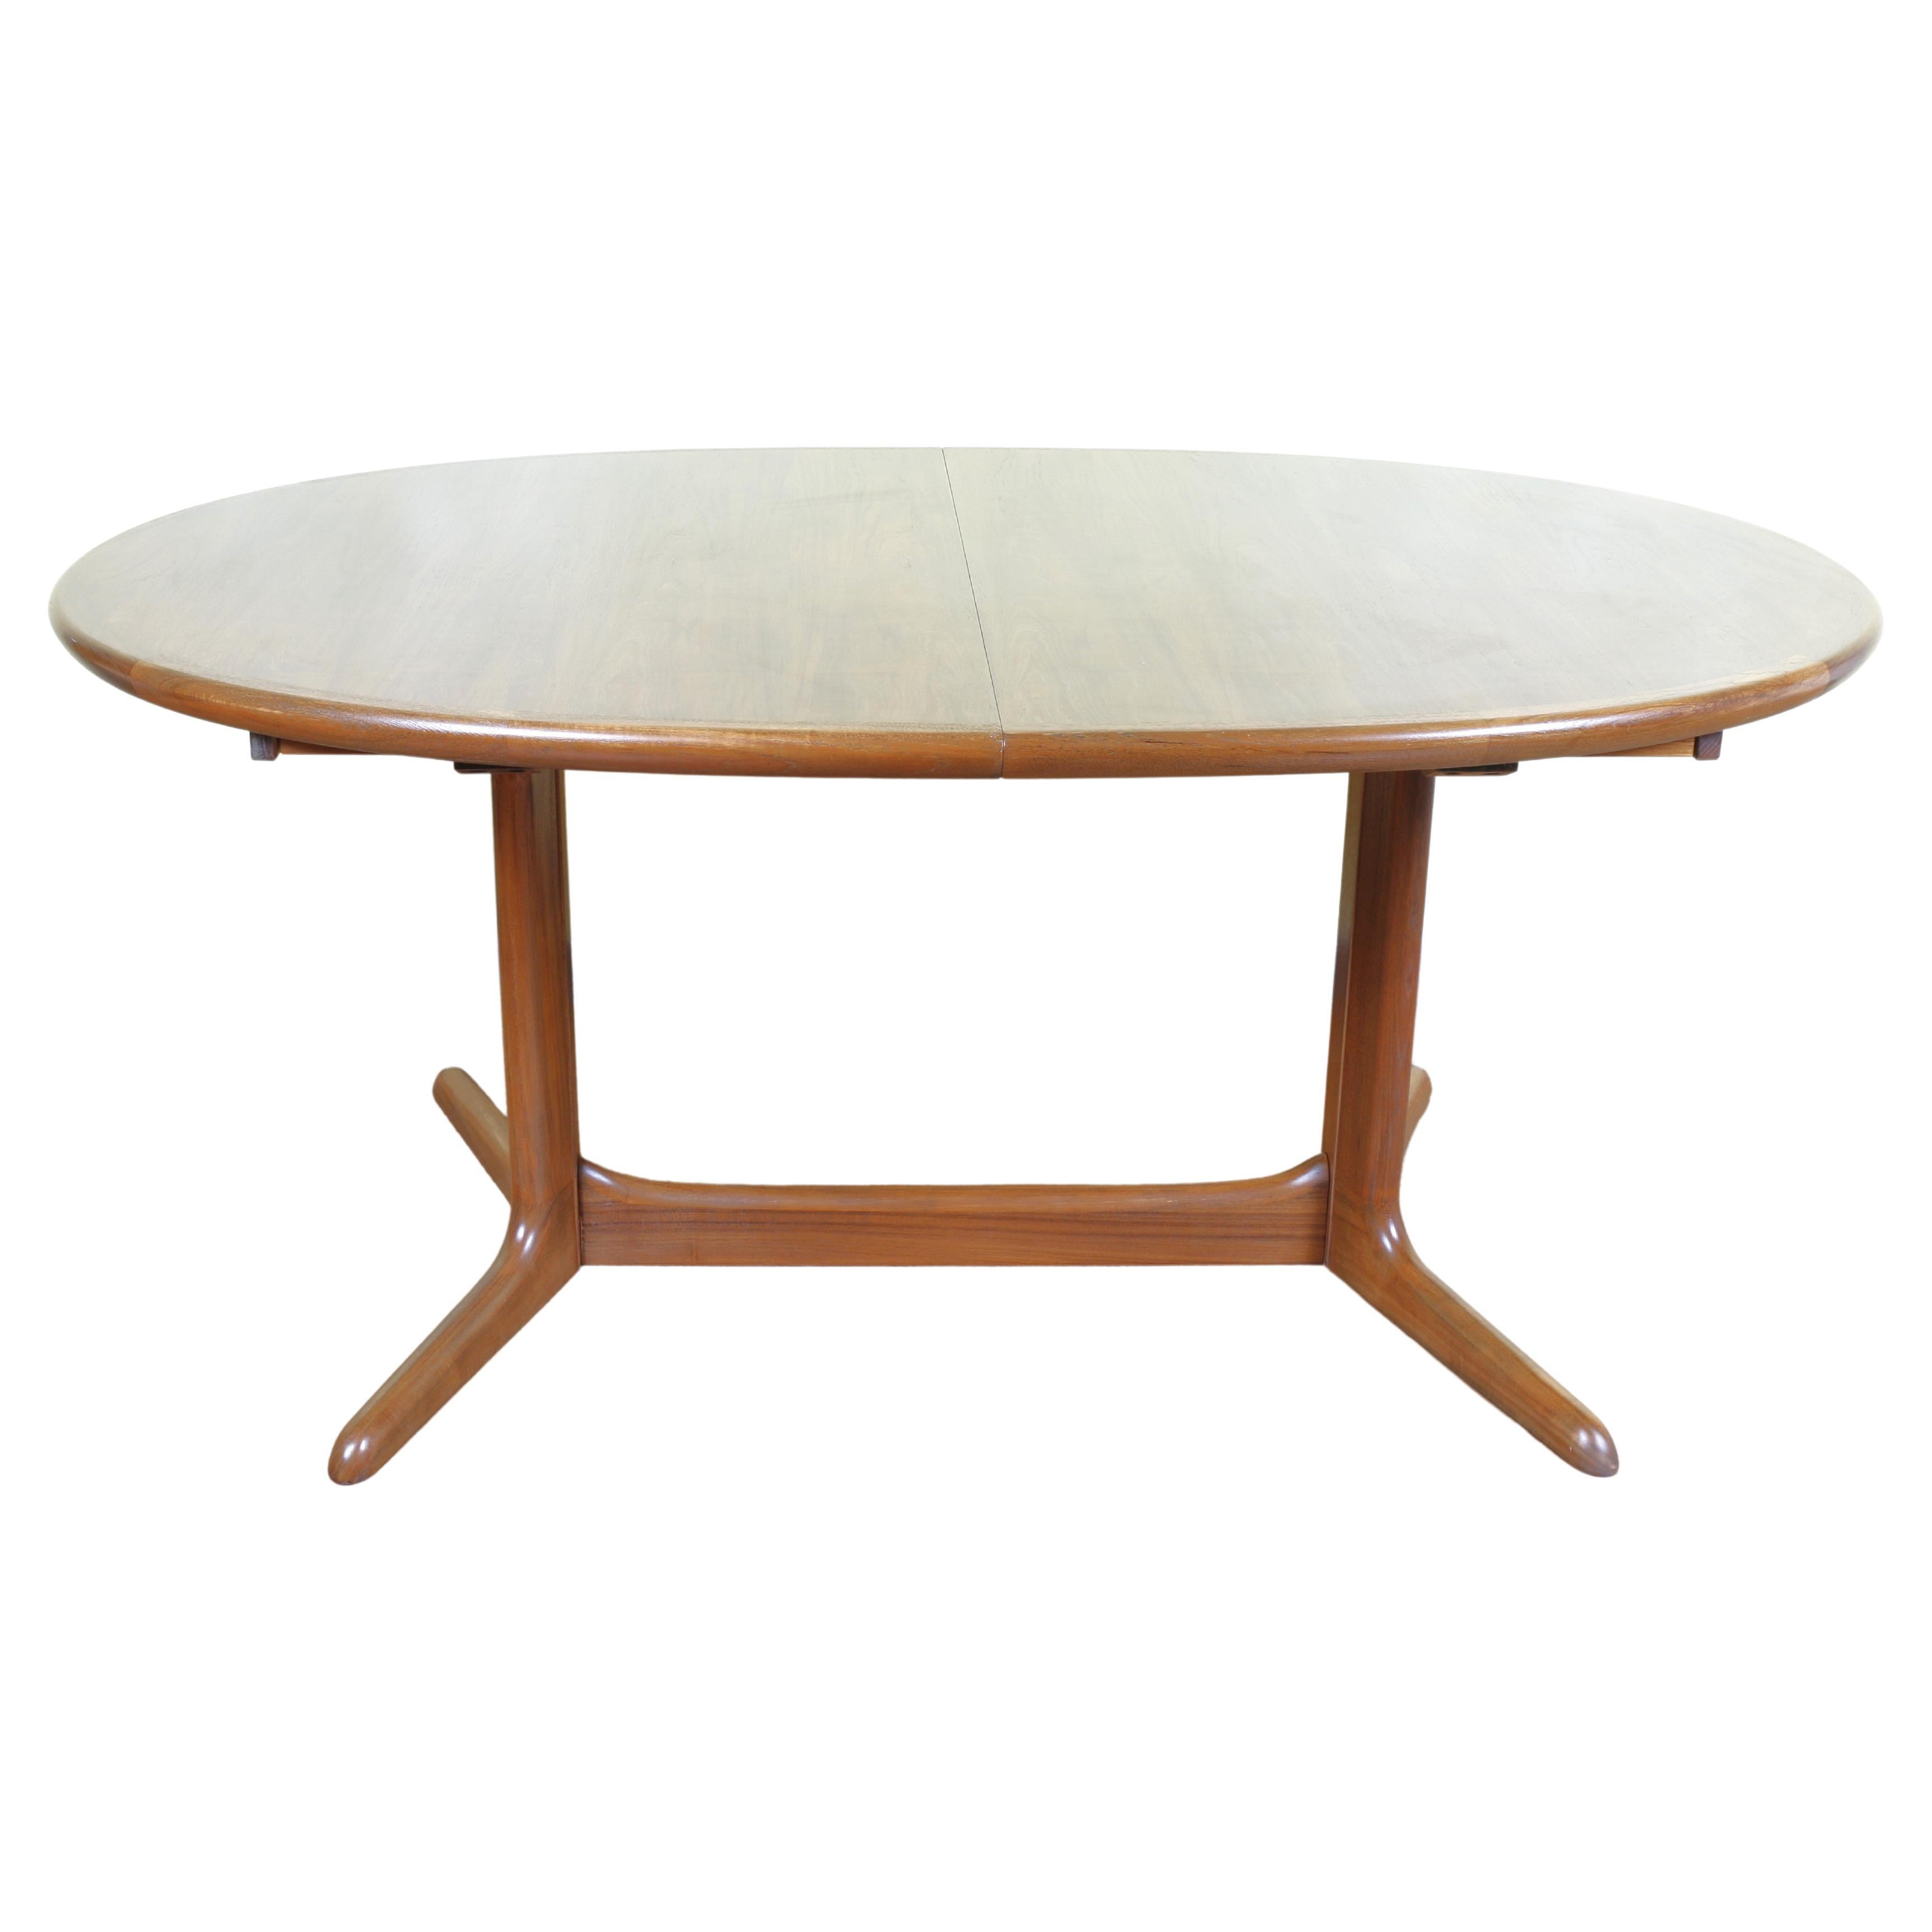 1960’s, Danish Teak Table By Skobvy For Sale